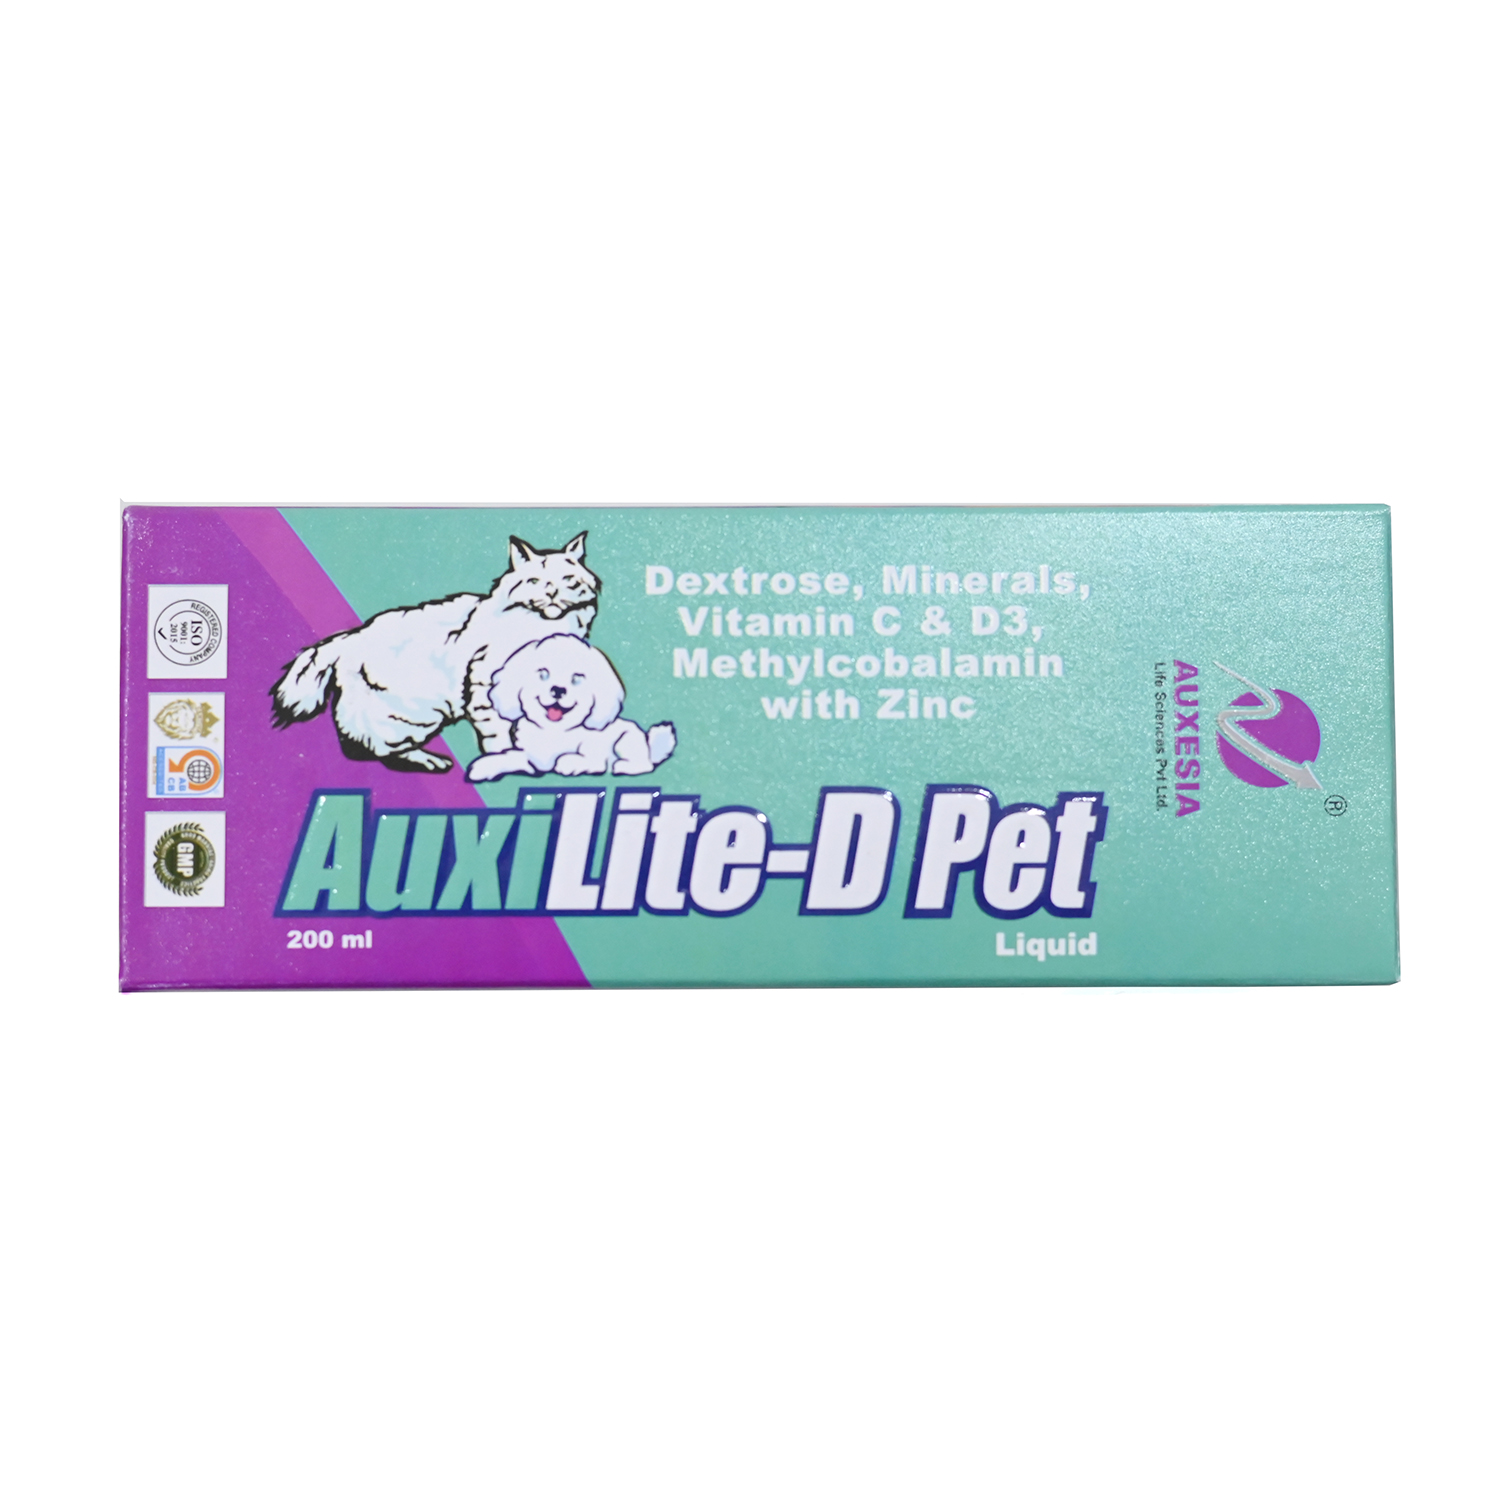 Auxilite-D Pet 200 ml Liquid